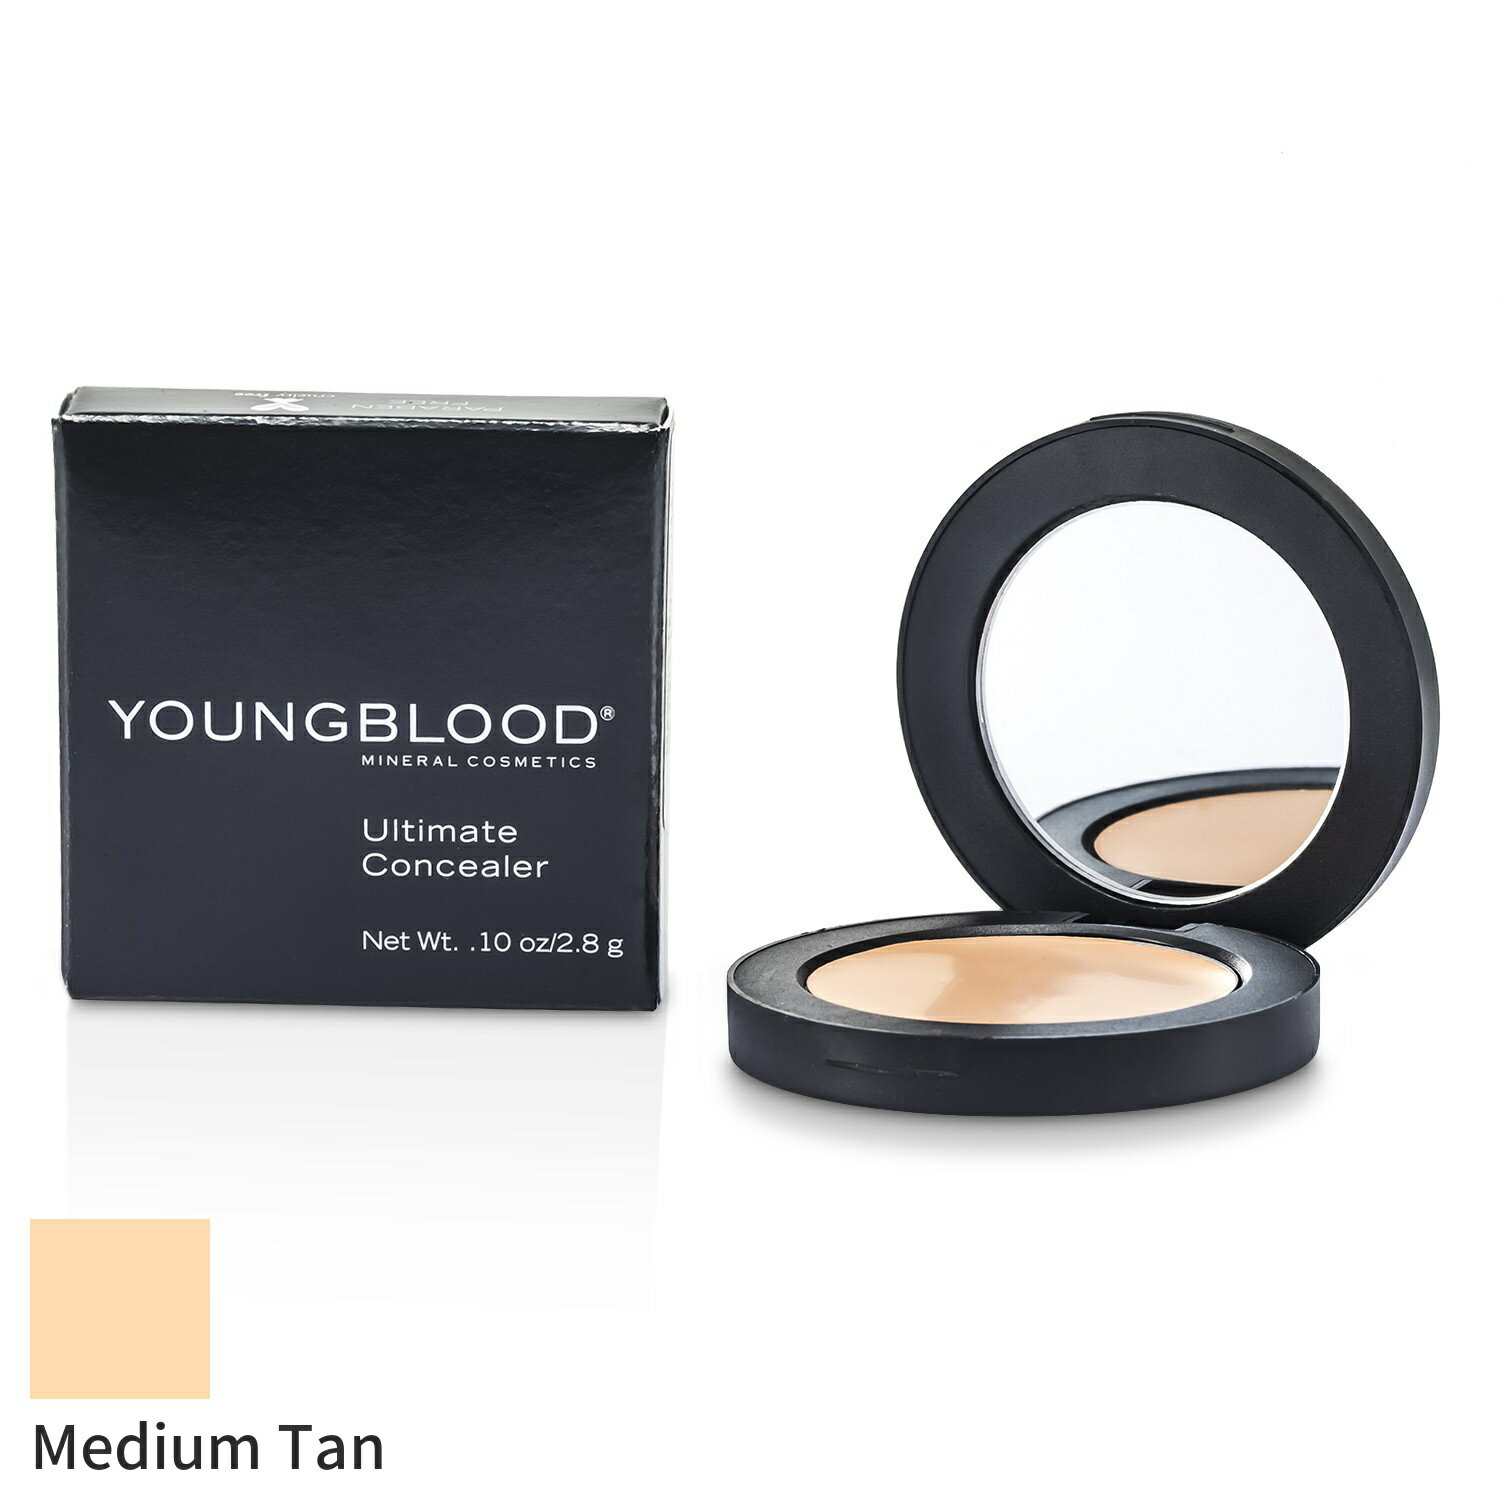 ヤングブラッド コンシーラー Youngblood アルティメートコンシーラー - Medium Tan 2.8g メイクアップ..